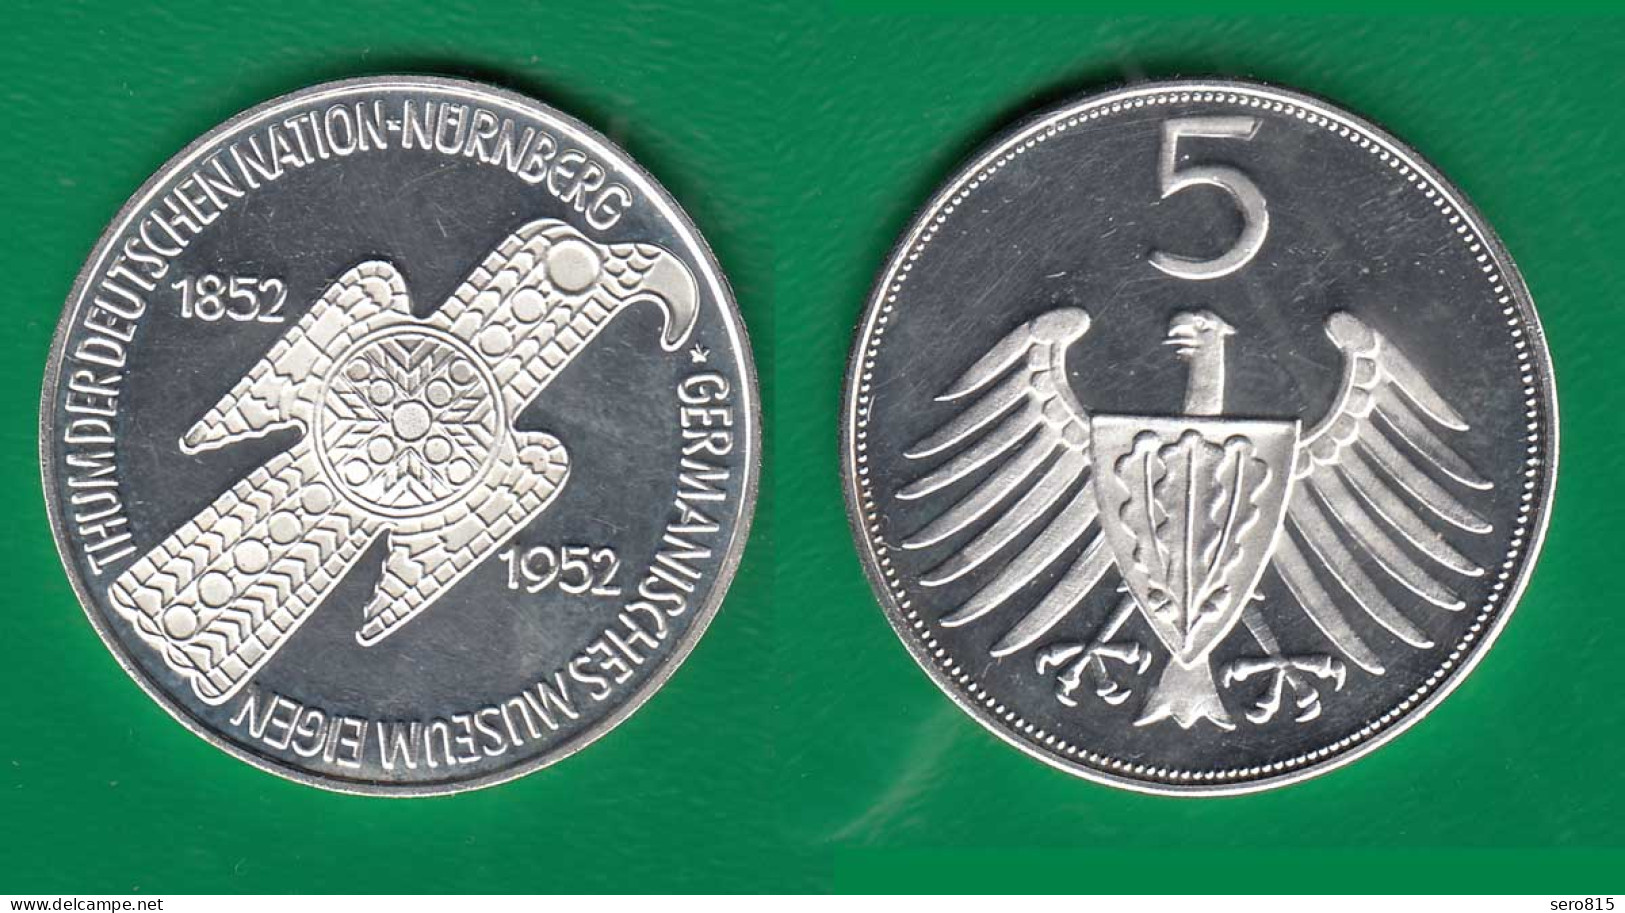 Medaille Ca.35 Mm Ca.17,2 Gramm Germanisches Museum NP 1852-1952   (31374 - Non Classés